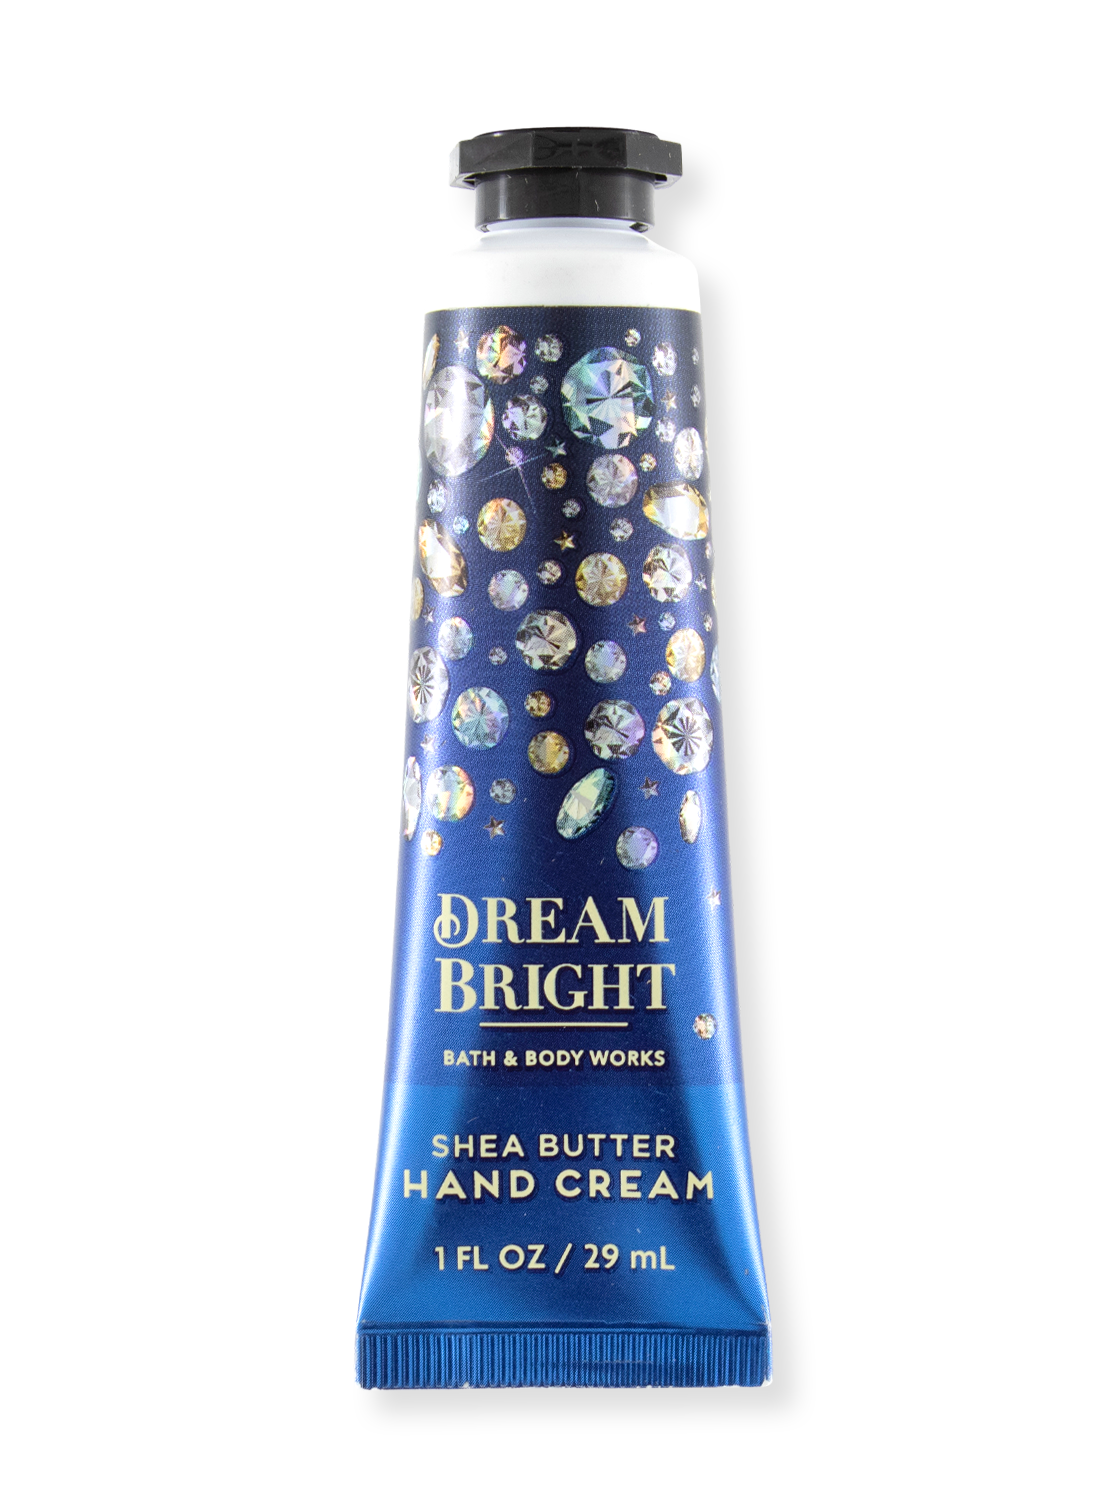 Handcrème - Dream Bright - 29ml